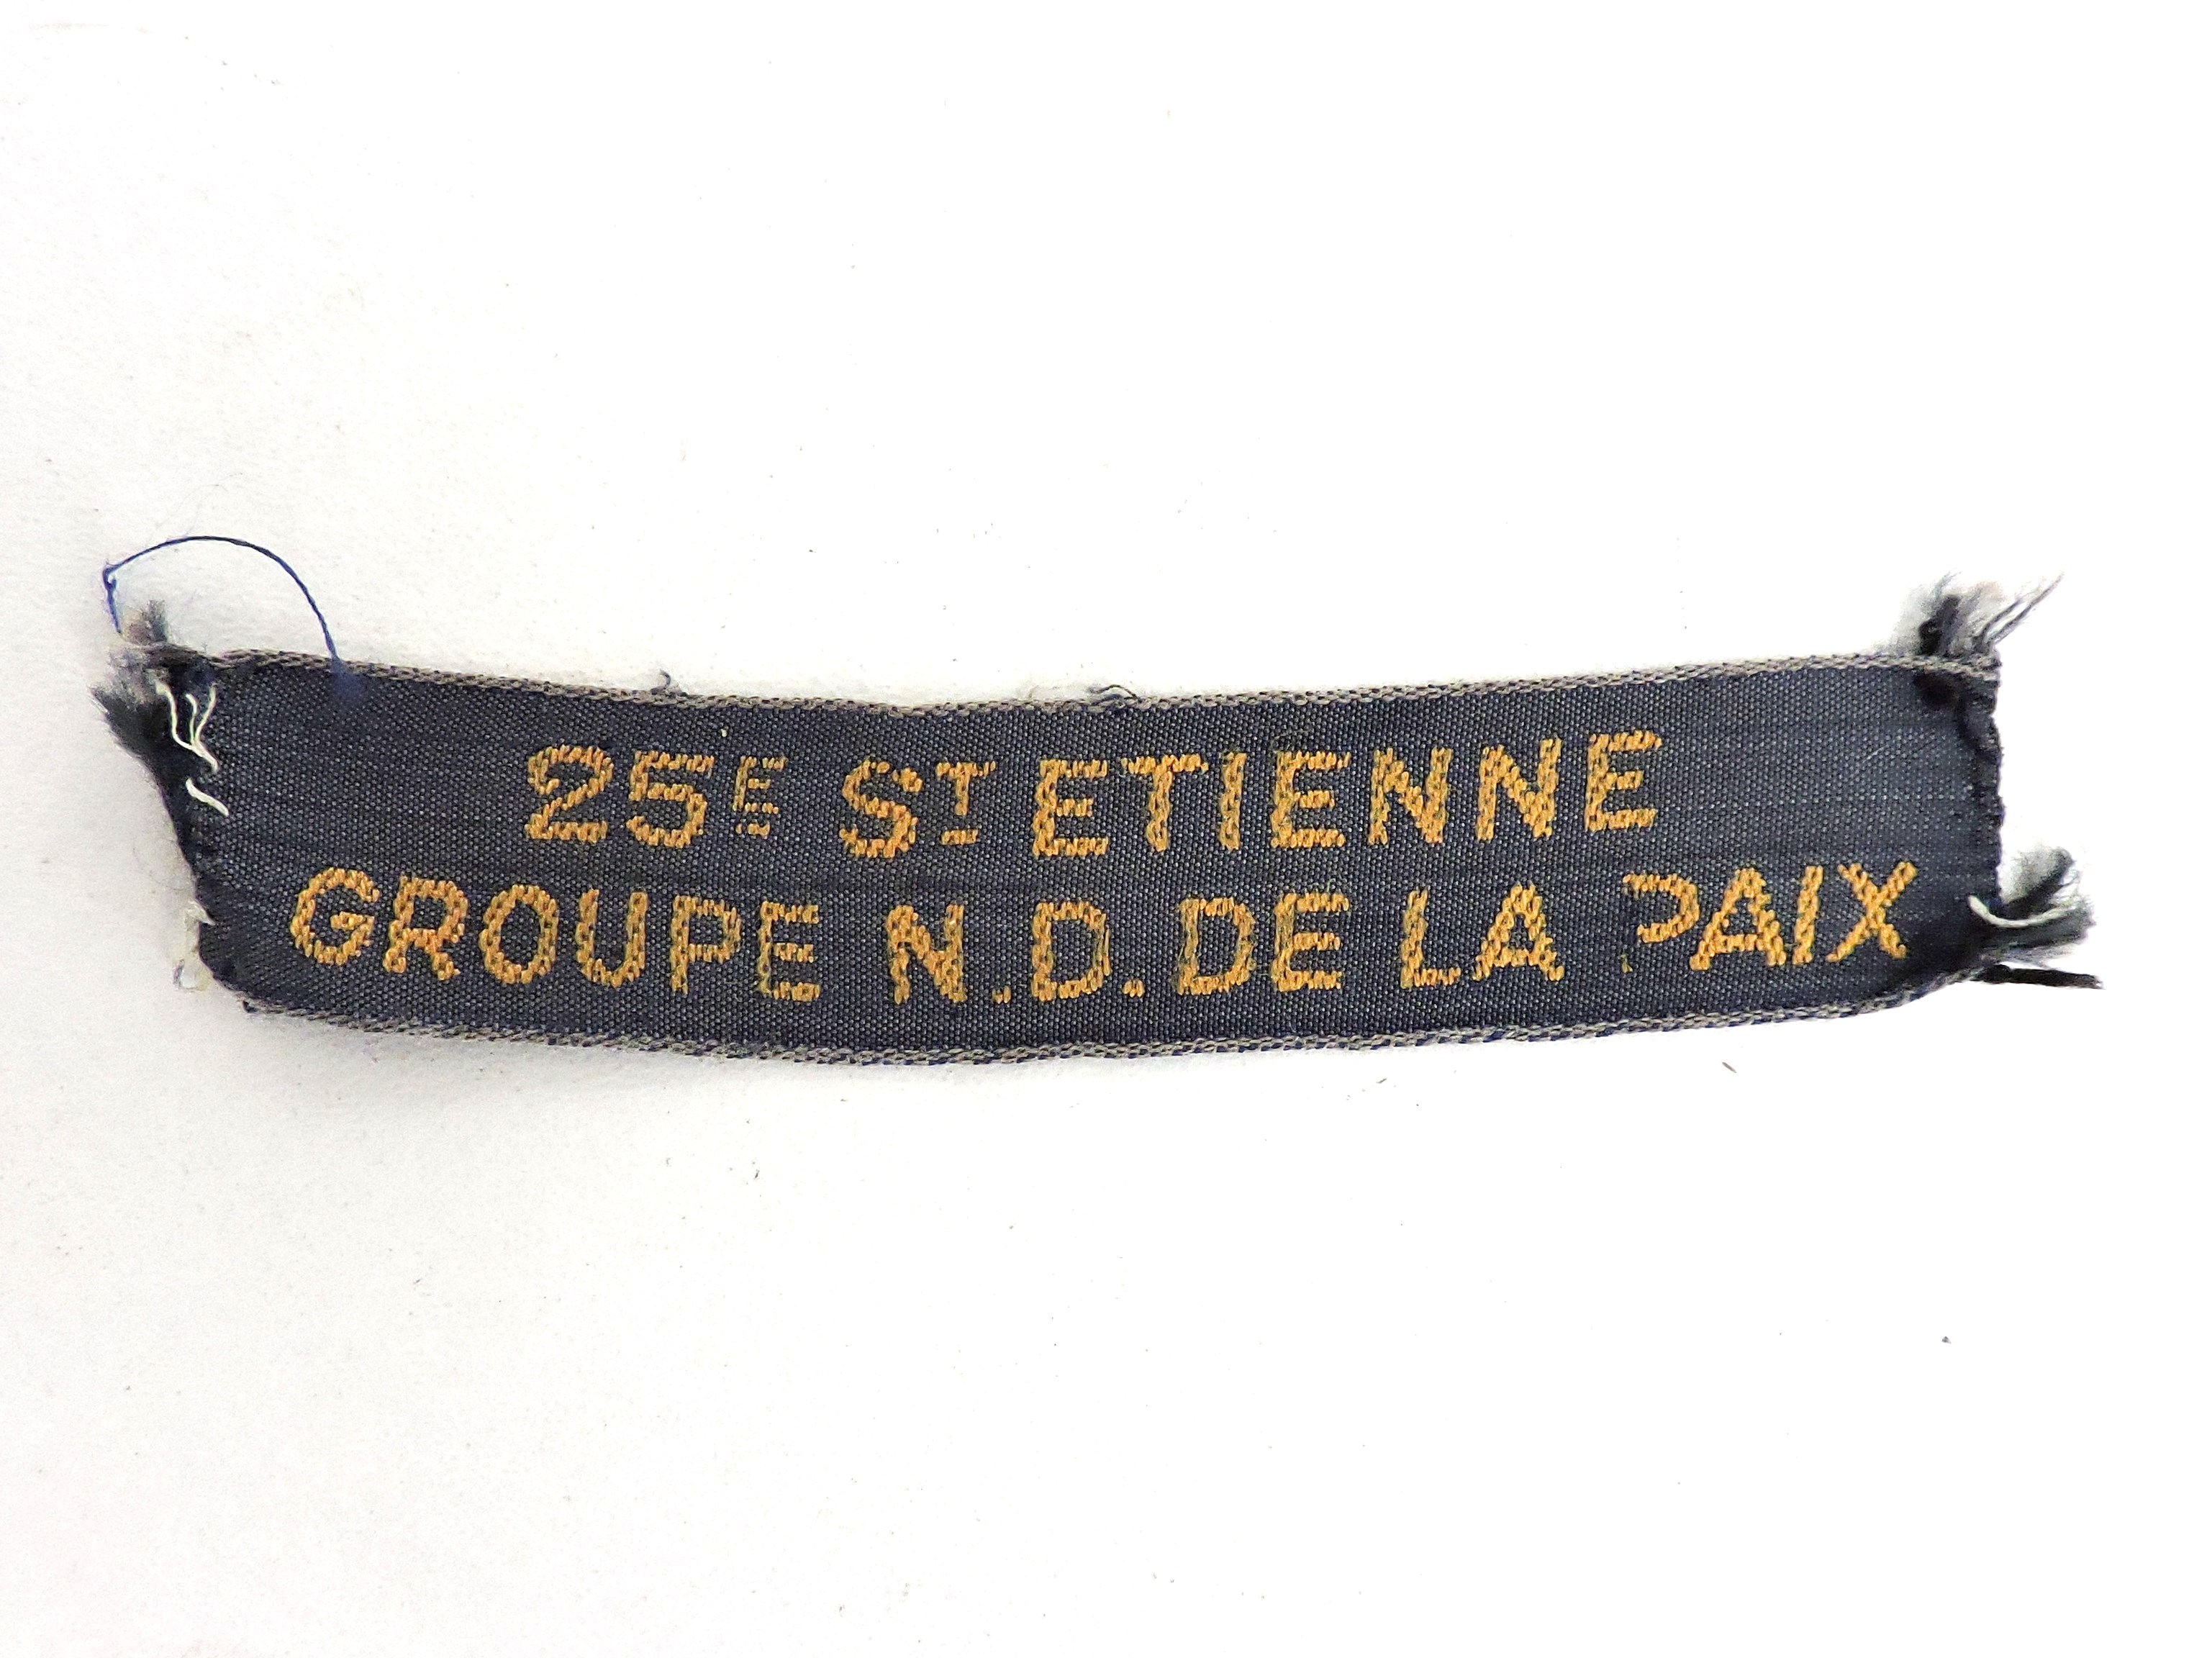 Insigne de groupe 25&deg; Saint Etienne  N.D.de la Paix